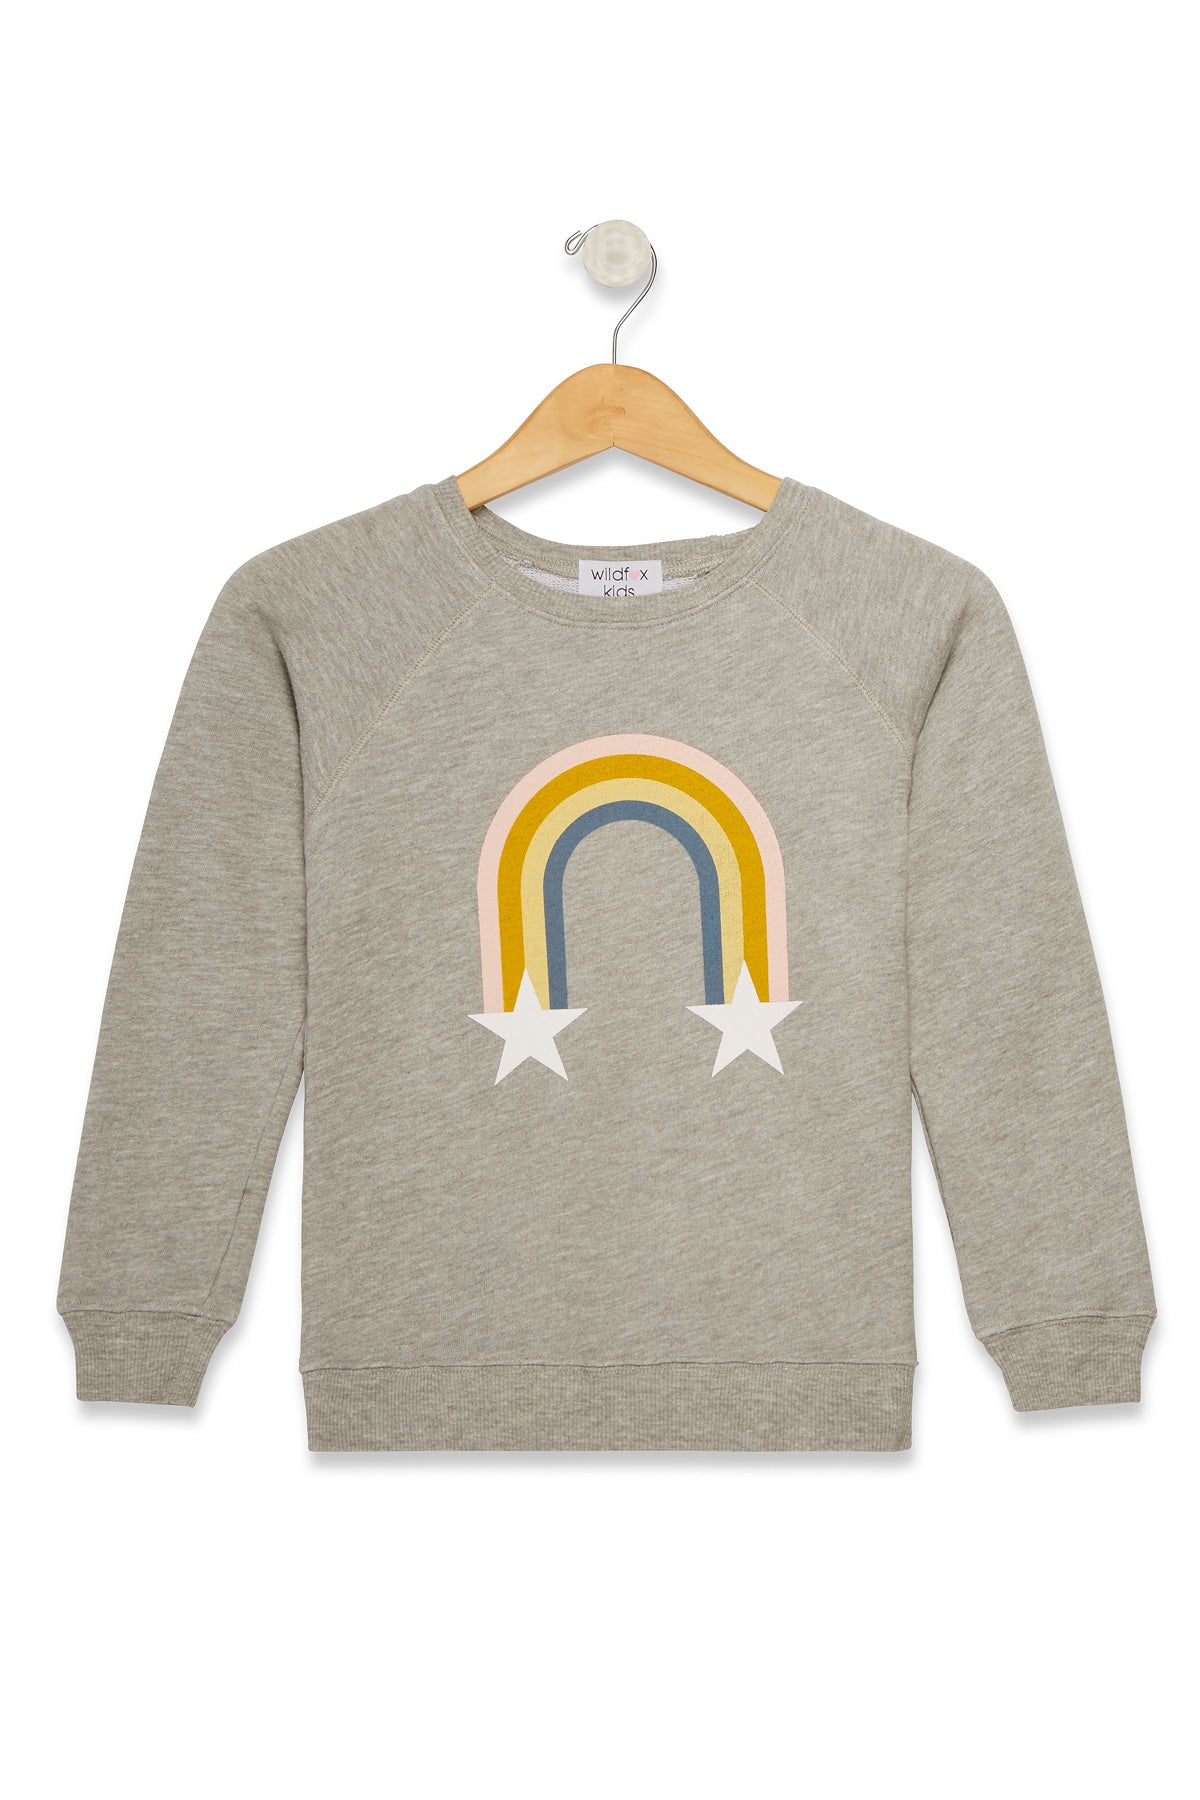 wildfox rainbow sweatshirt